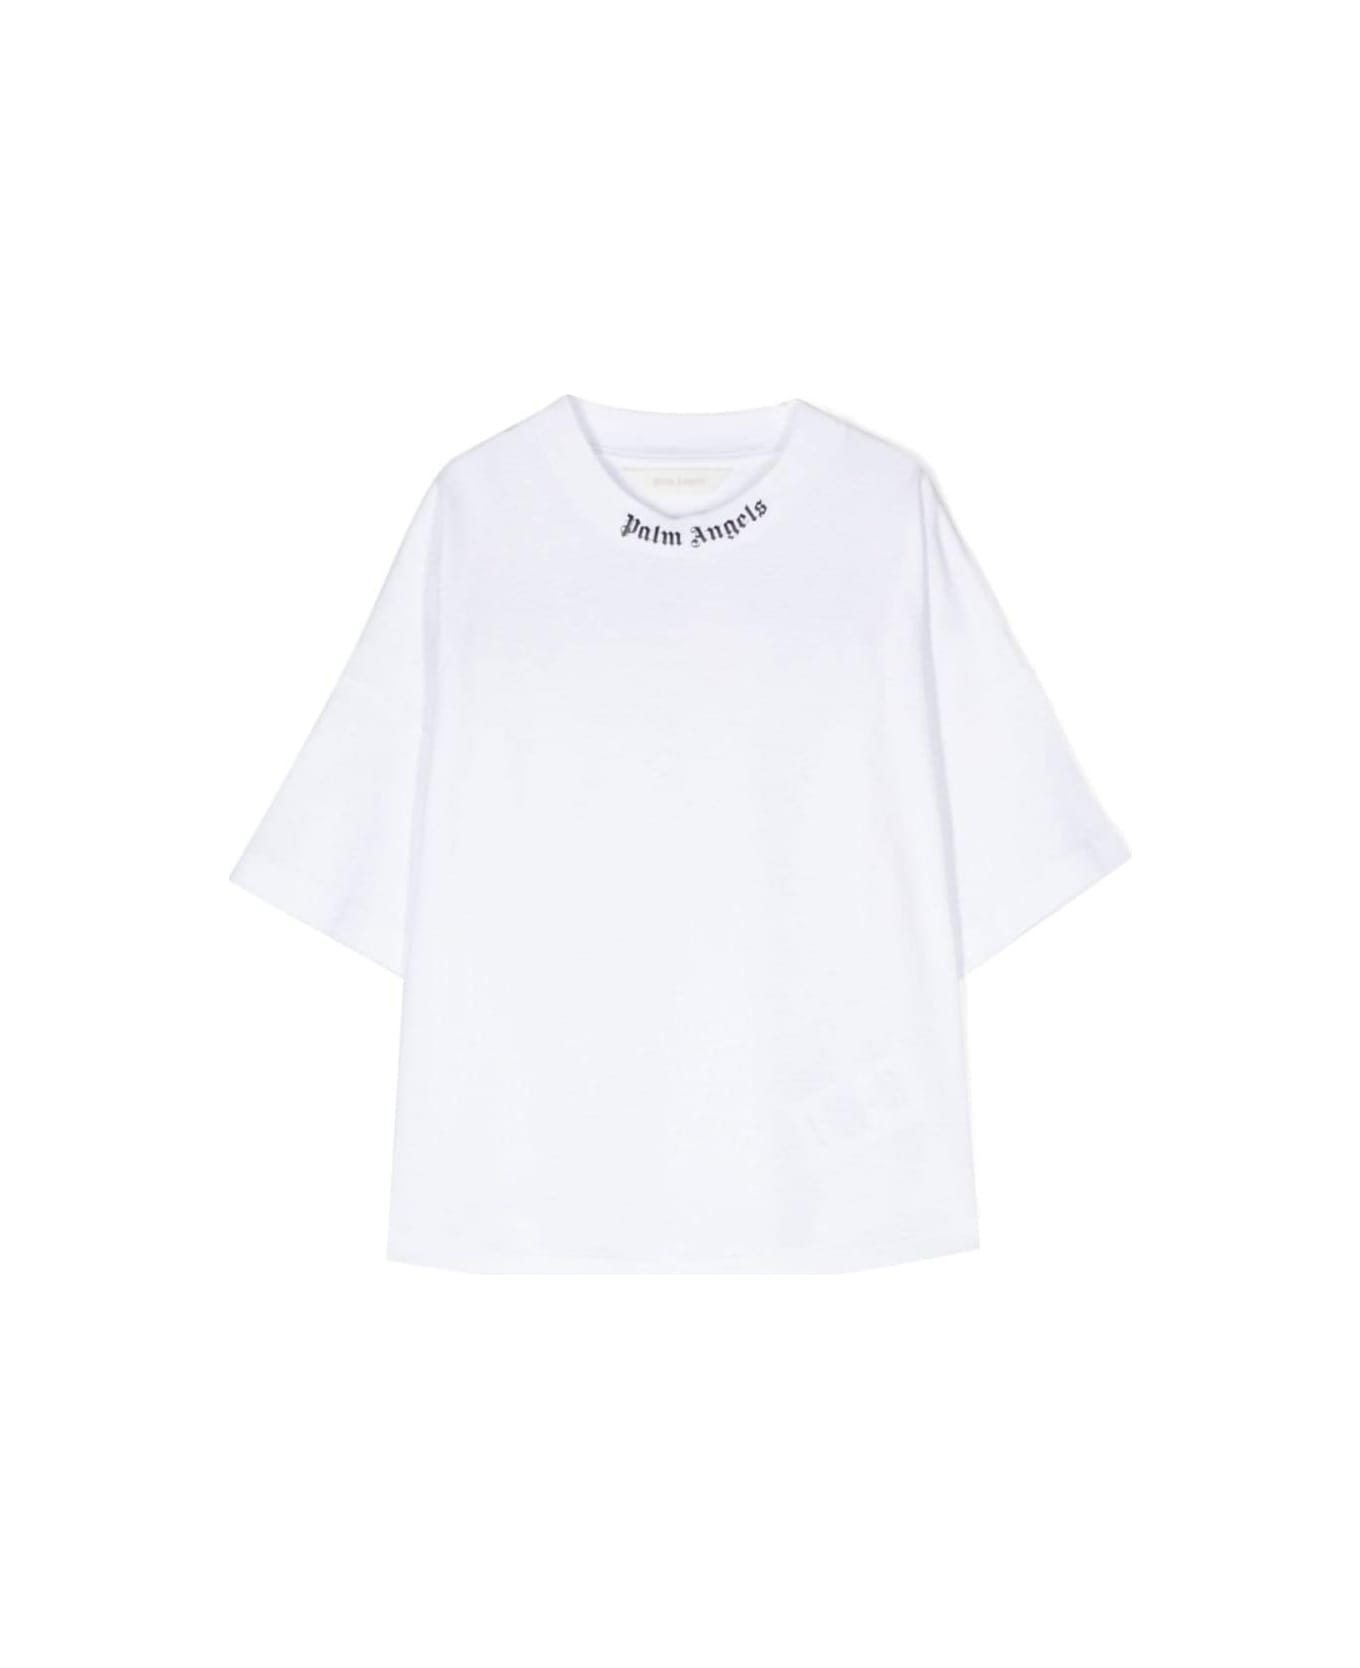 Palm Angels Classic Overlogo T-shirt S/s White Black - White